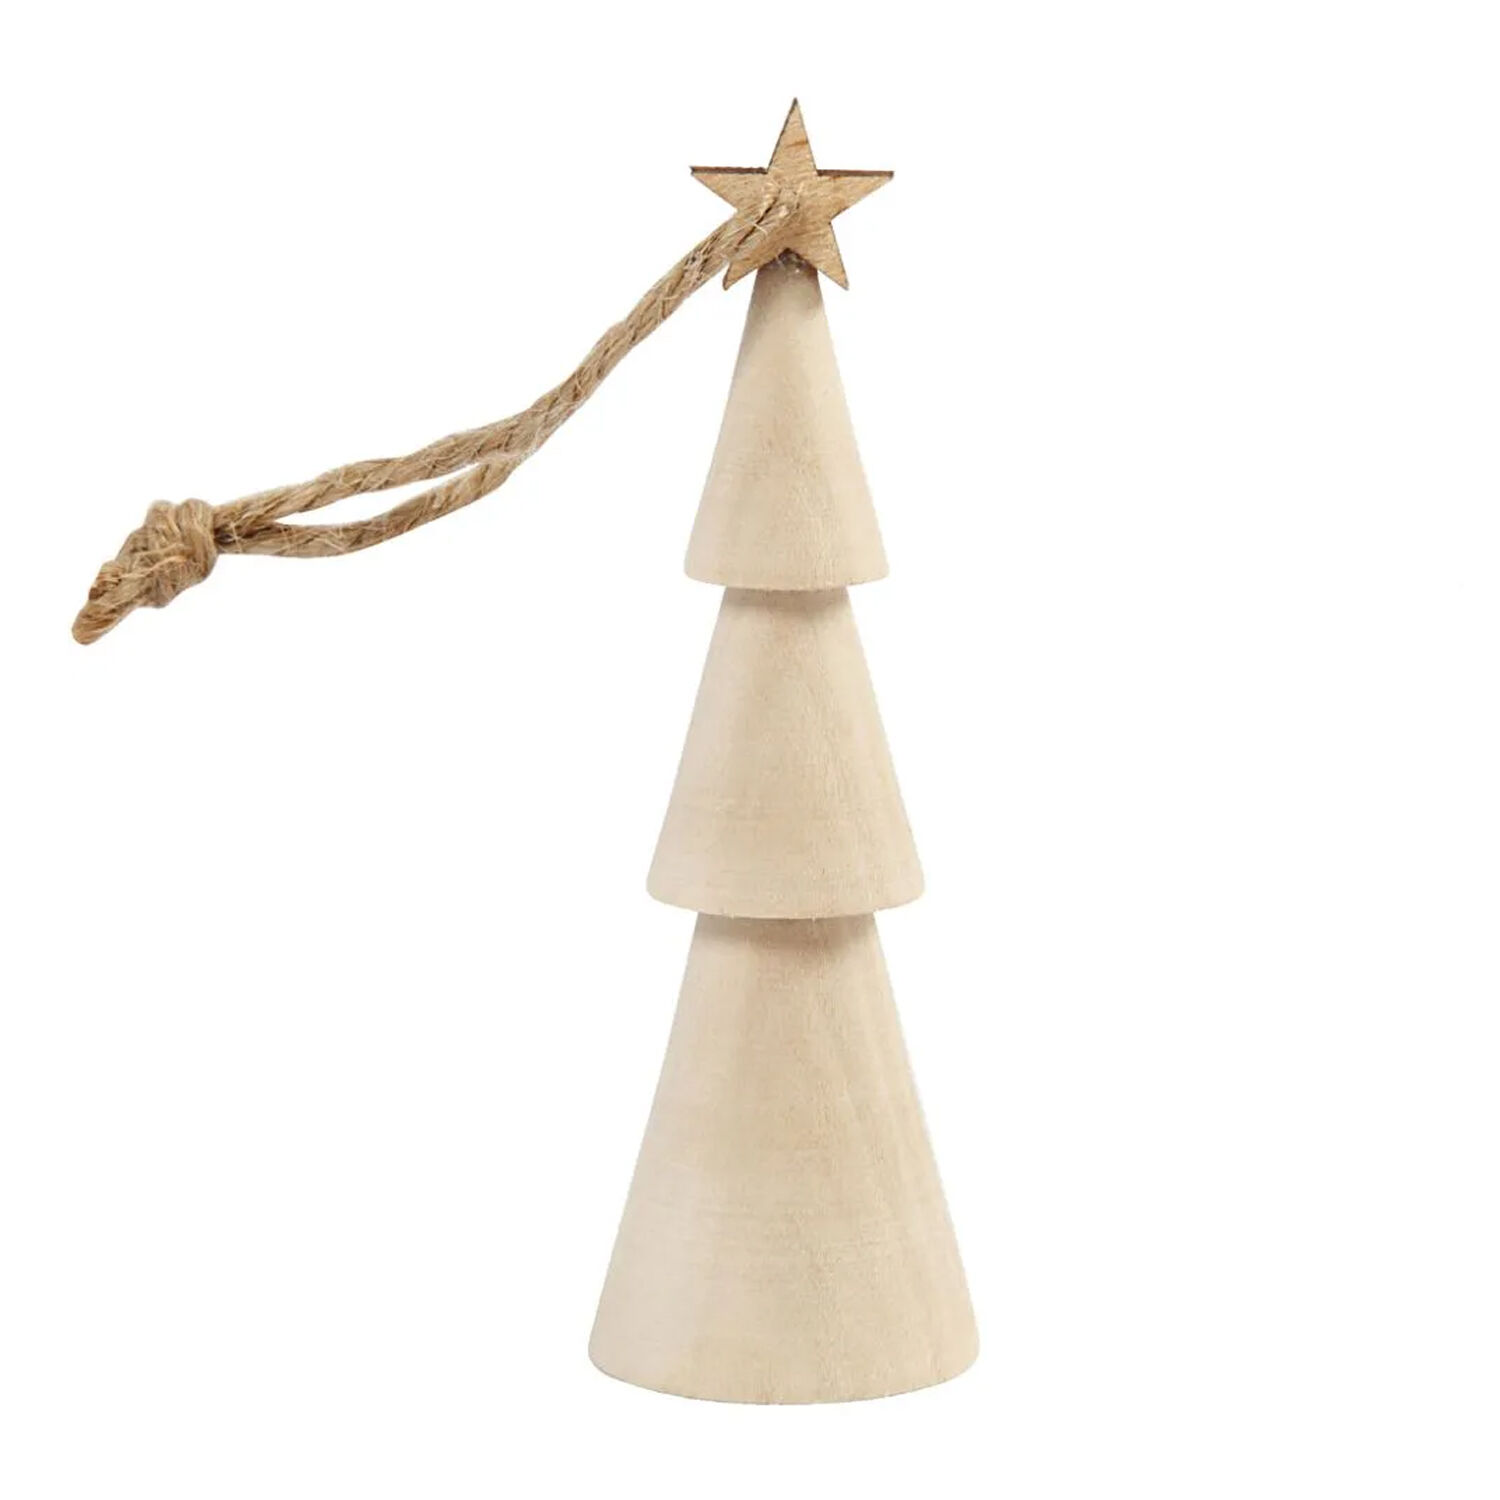 NEU Weihnachtsbaum Kegelform aus Holz, 9 cm